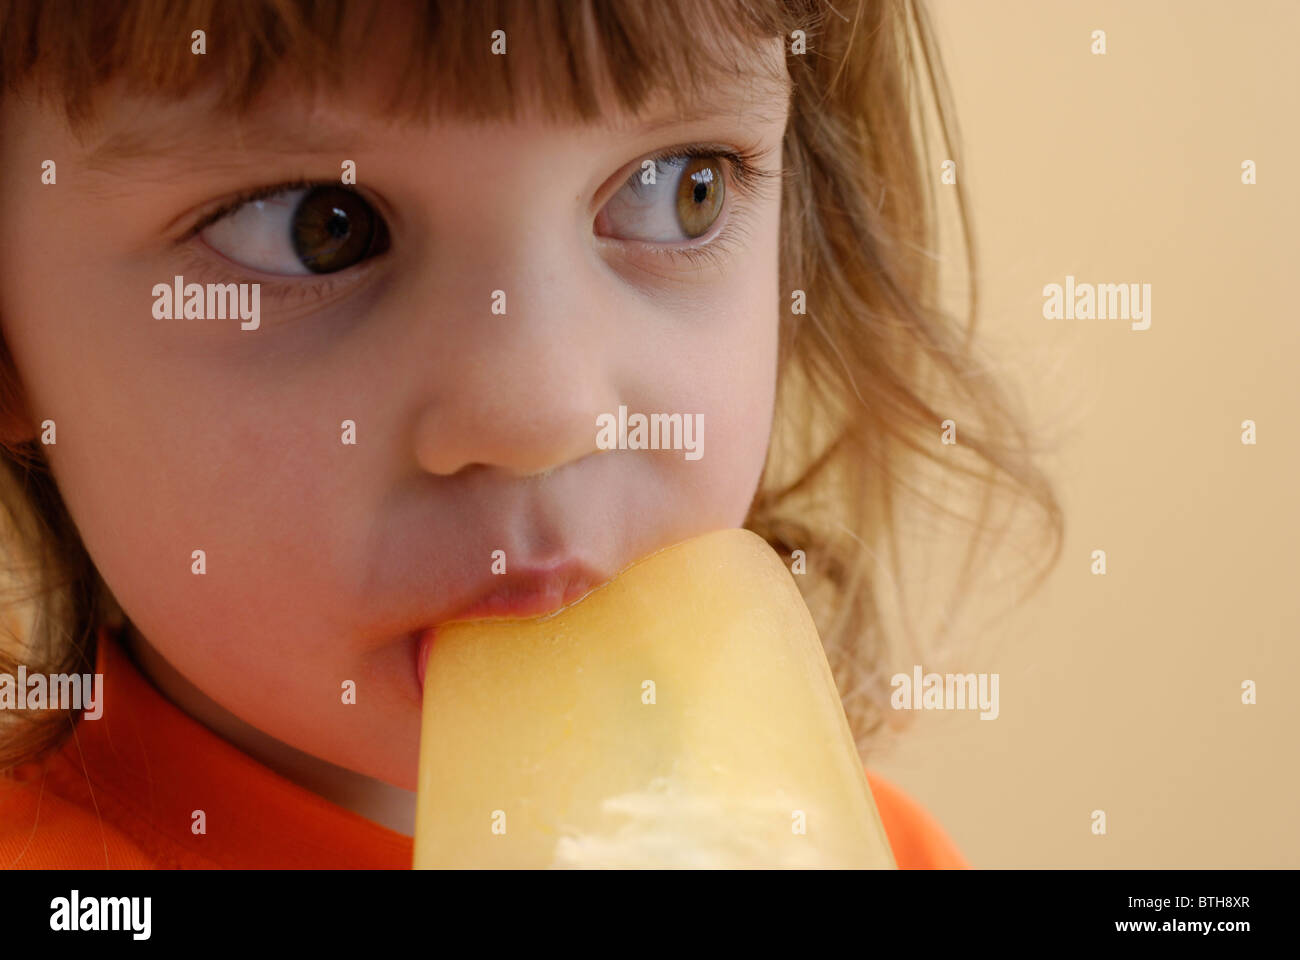 Drei Jahre altes Mädchen essen eine orange Eis am Stiel. Stockfoto